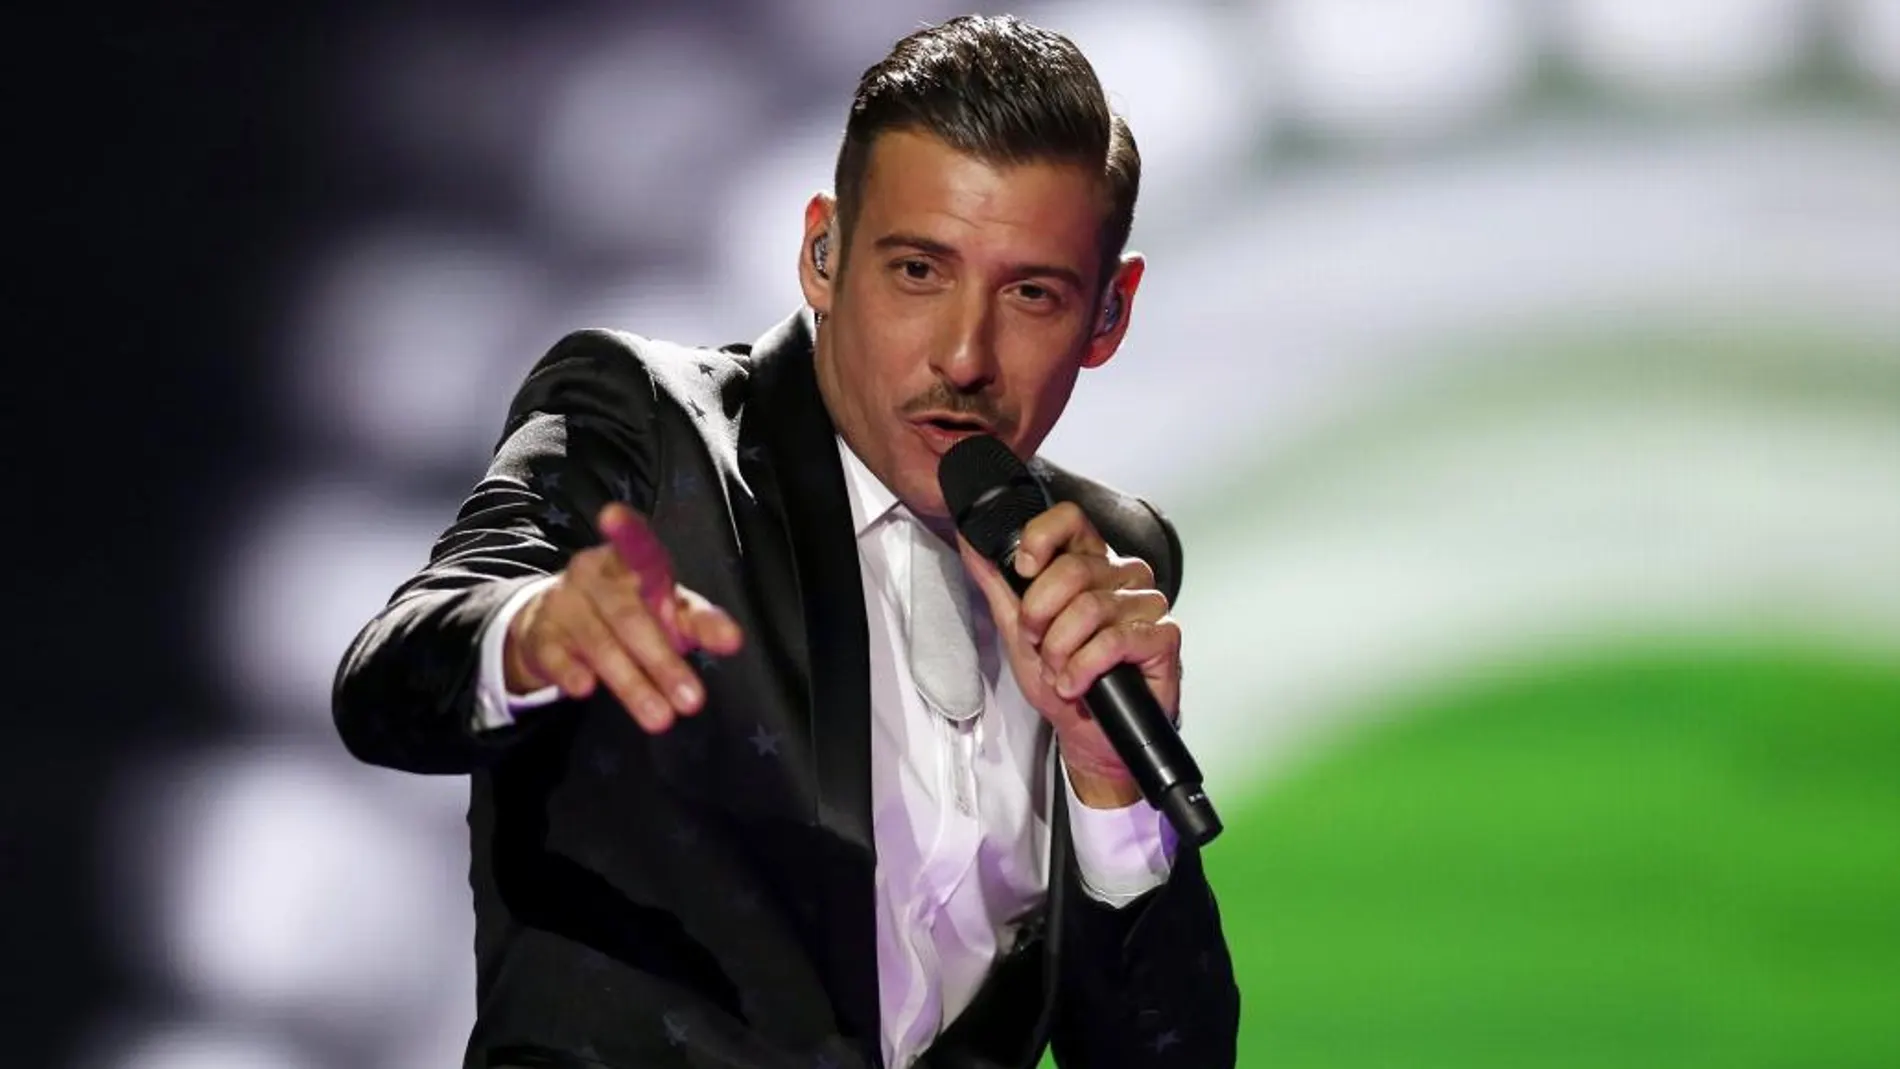 El cantante italiano Francesco Gabbani durante los ensayos para las semifinales del festival Eurovisión 2017 en Kiev